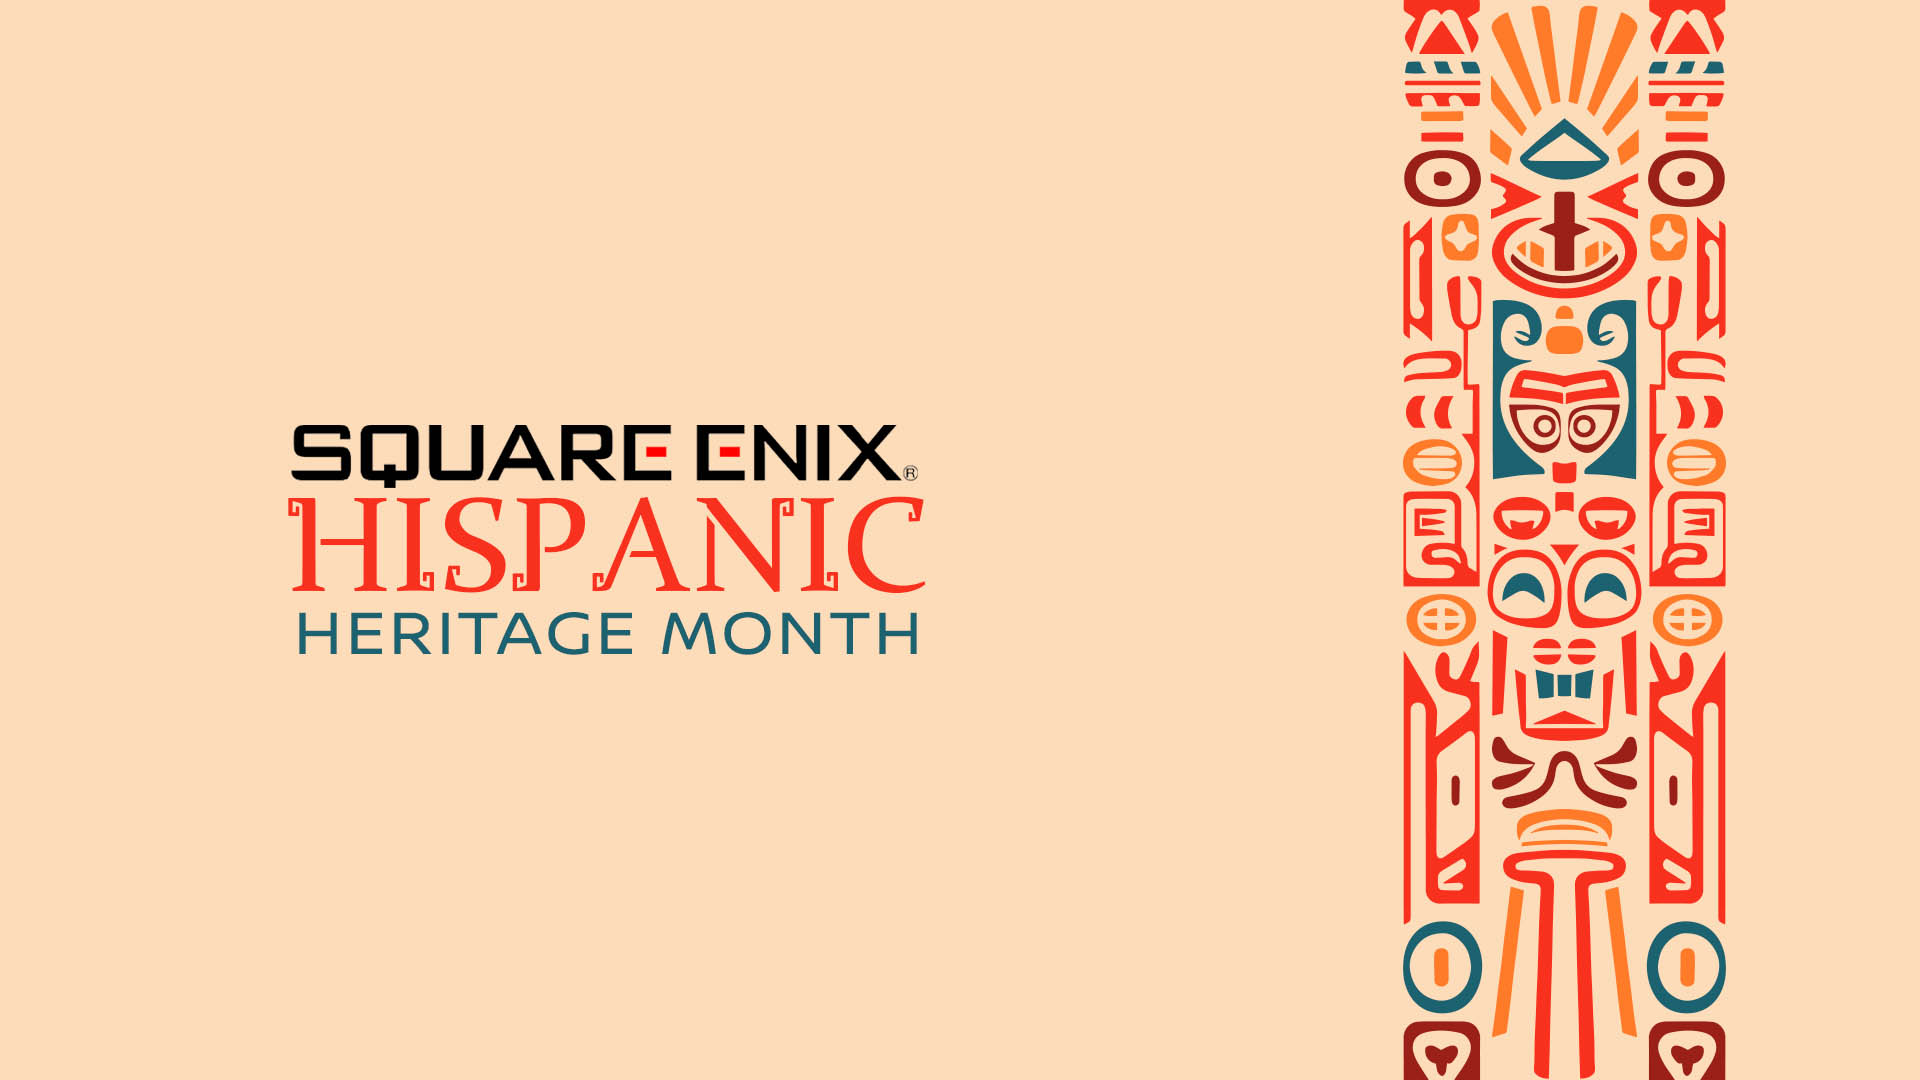 Square Enix celebrates “Hispanic Heritage Month”, limits comments